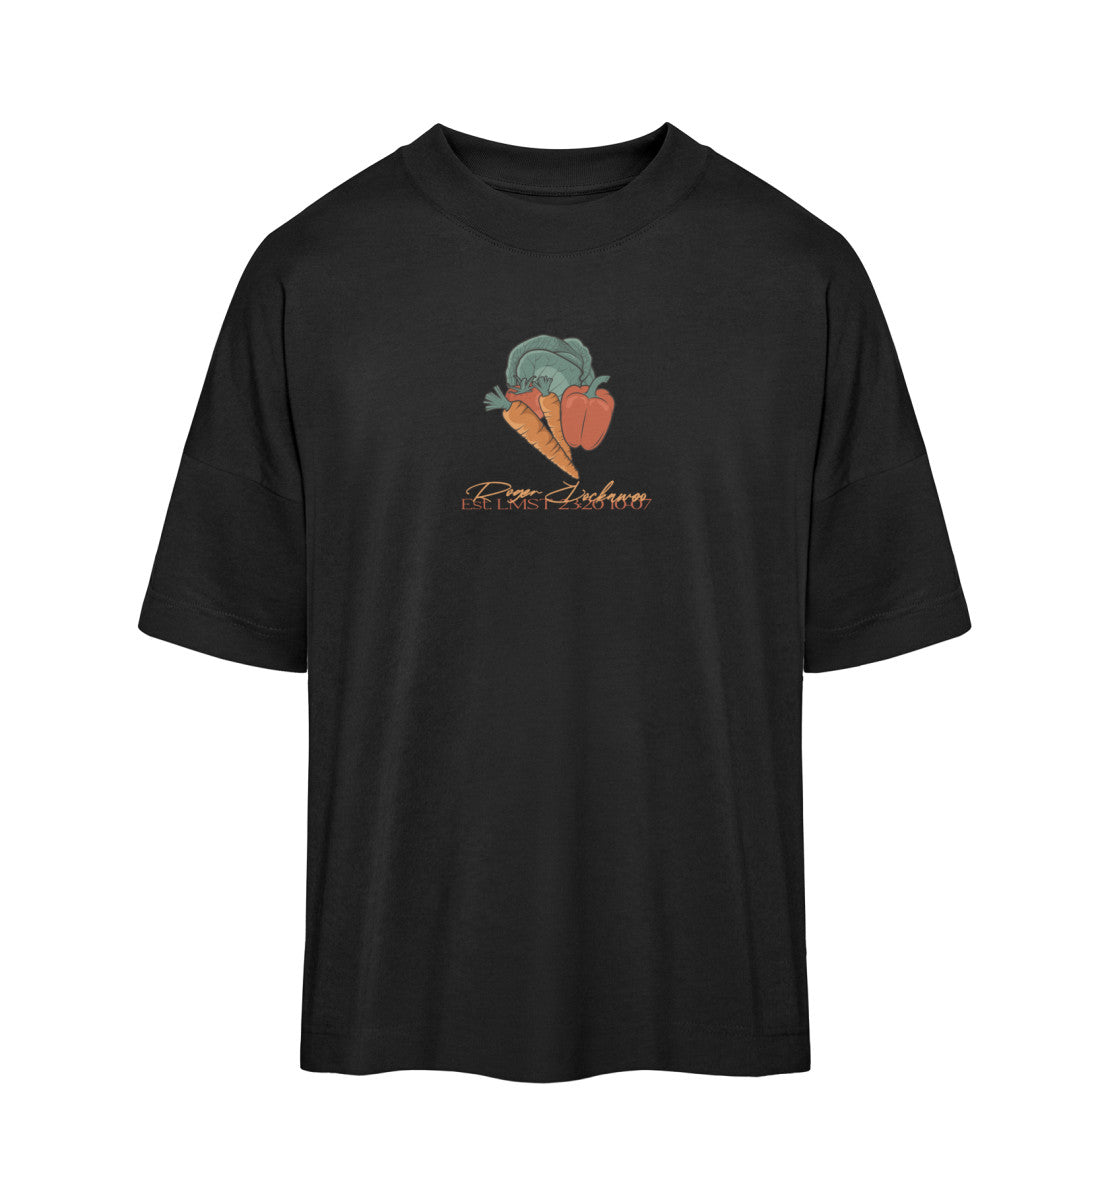 Schwarzes T-Shirt Unisex Oversize Fit für Frauen und Männer bedruckt mit dem Design der Roger Rockawoo Kollektion do your squats eat your veggies